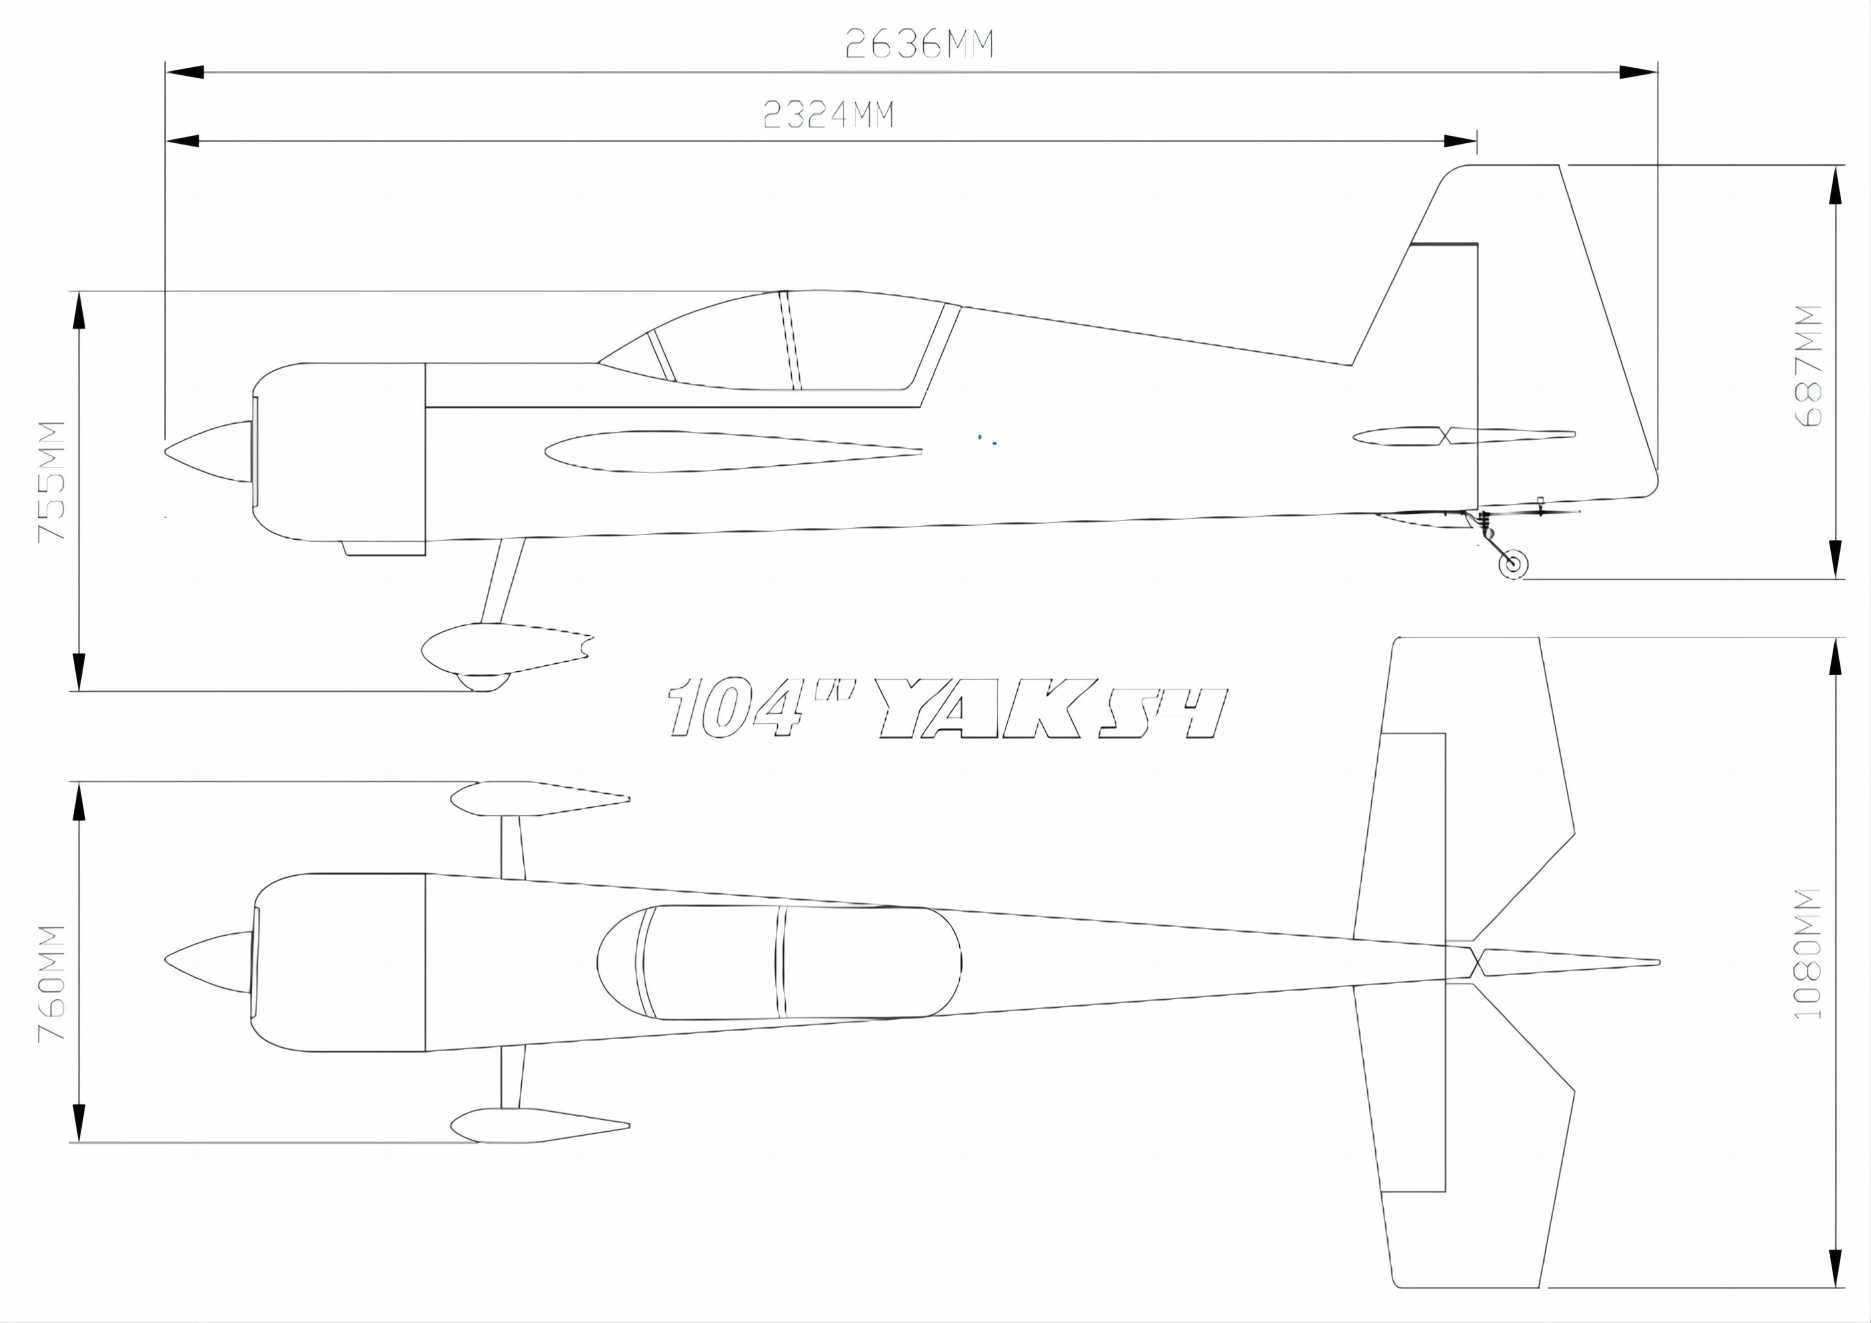 Yak 54 - 104 V1 - weiß/orange/blau - B